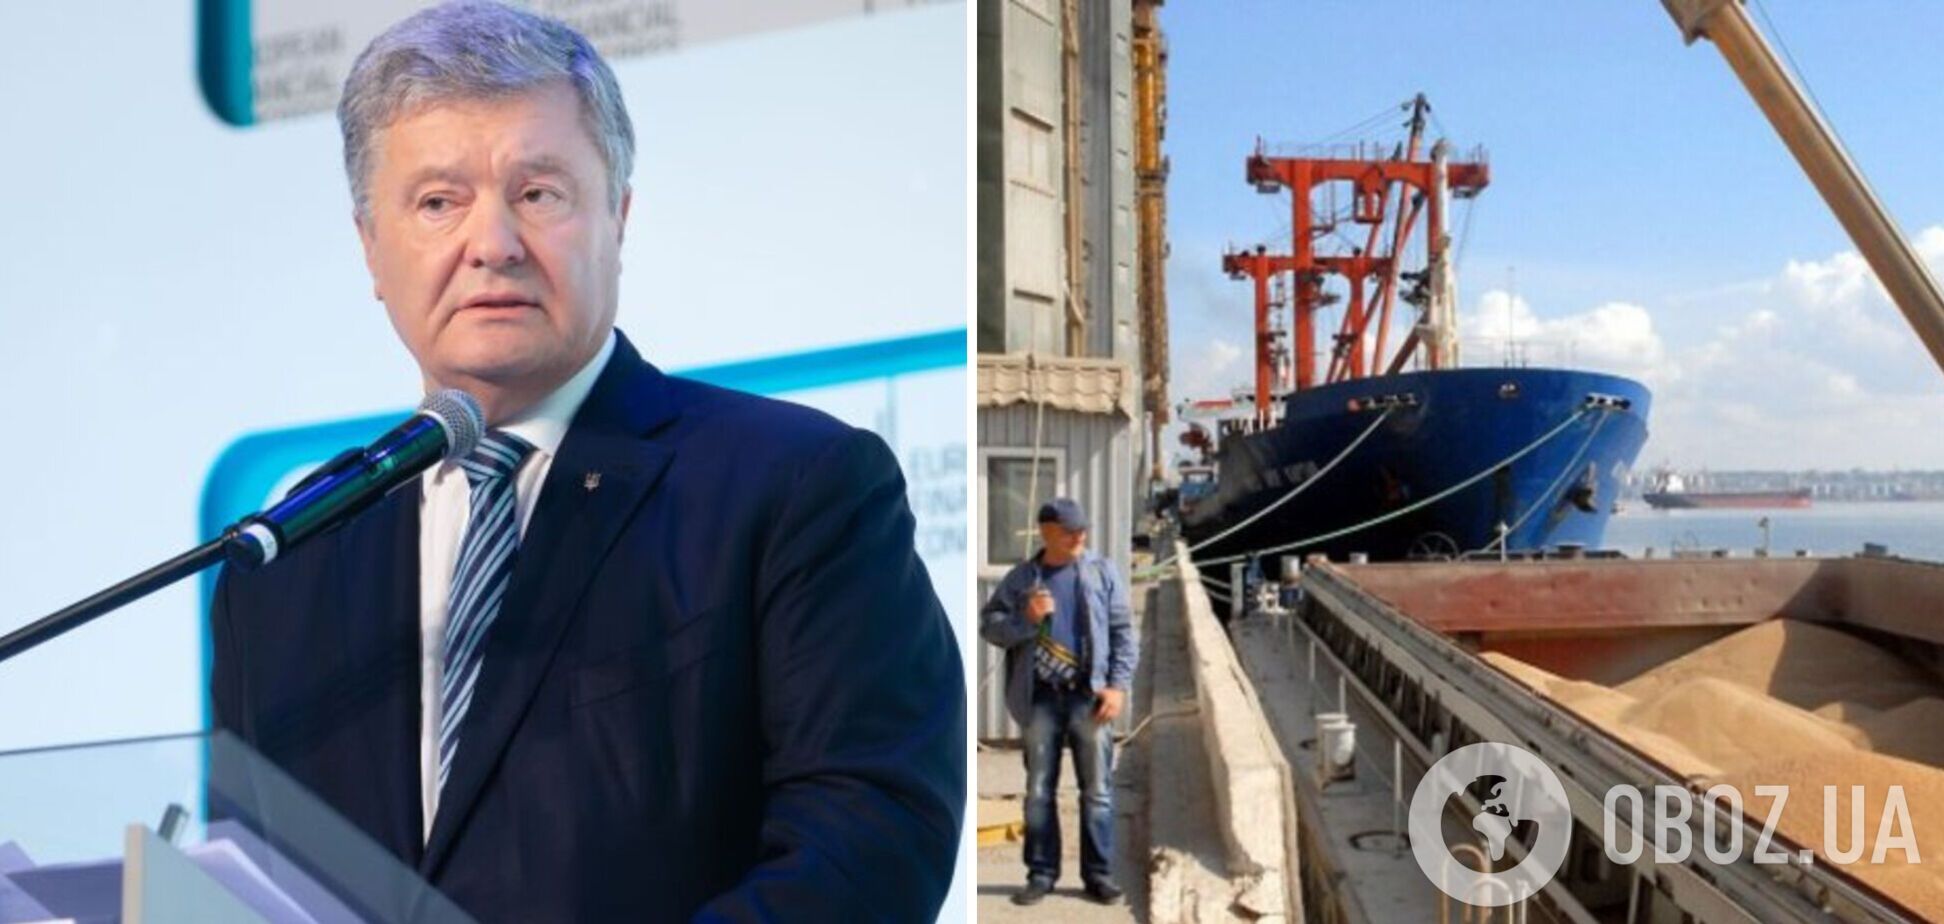 Порошенко в Сопоте: если Россия не прекратит блокаду украинских портов, тогда должен быть заблокирован весь ее экспорт